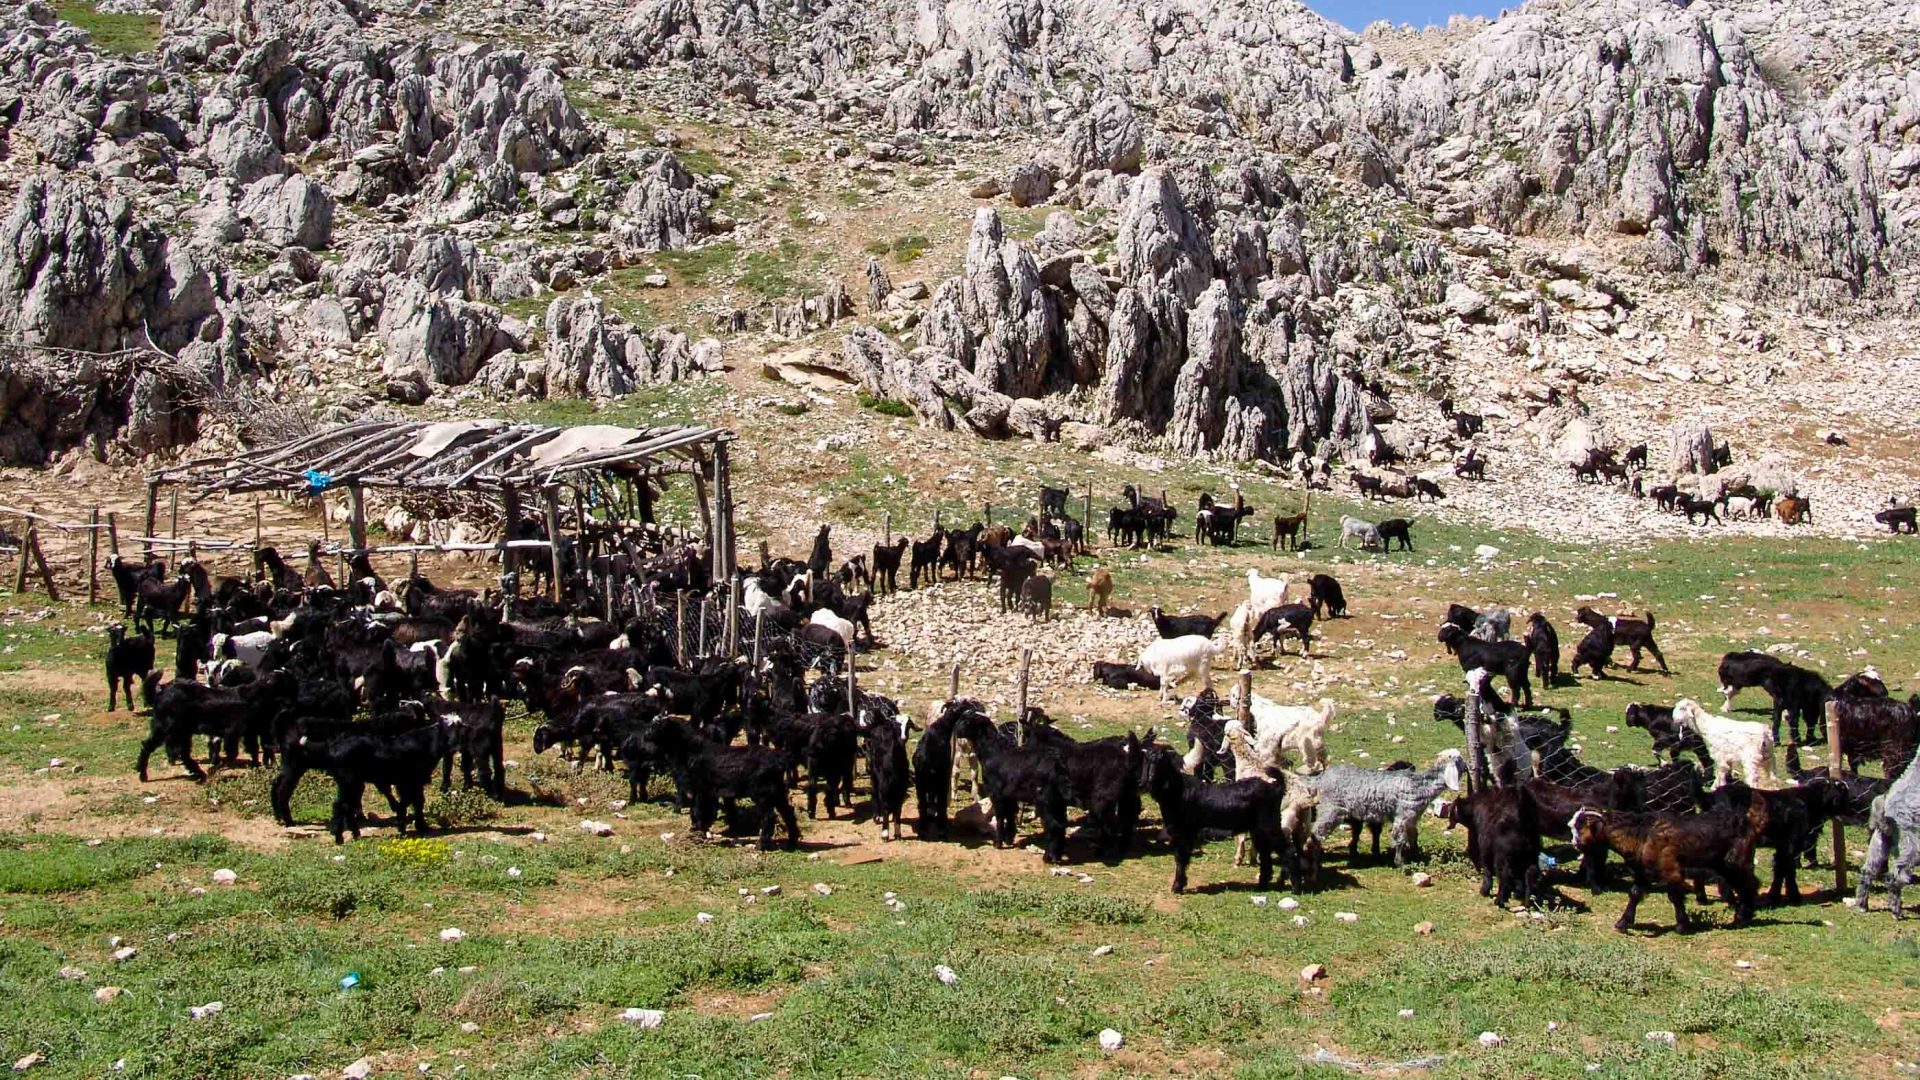 Goats on a rocky hill side.